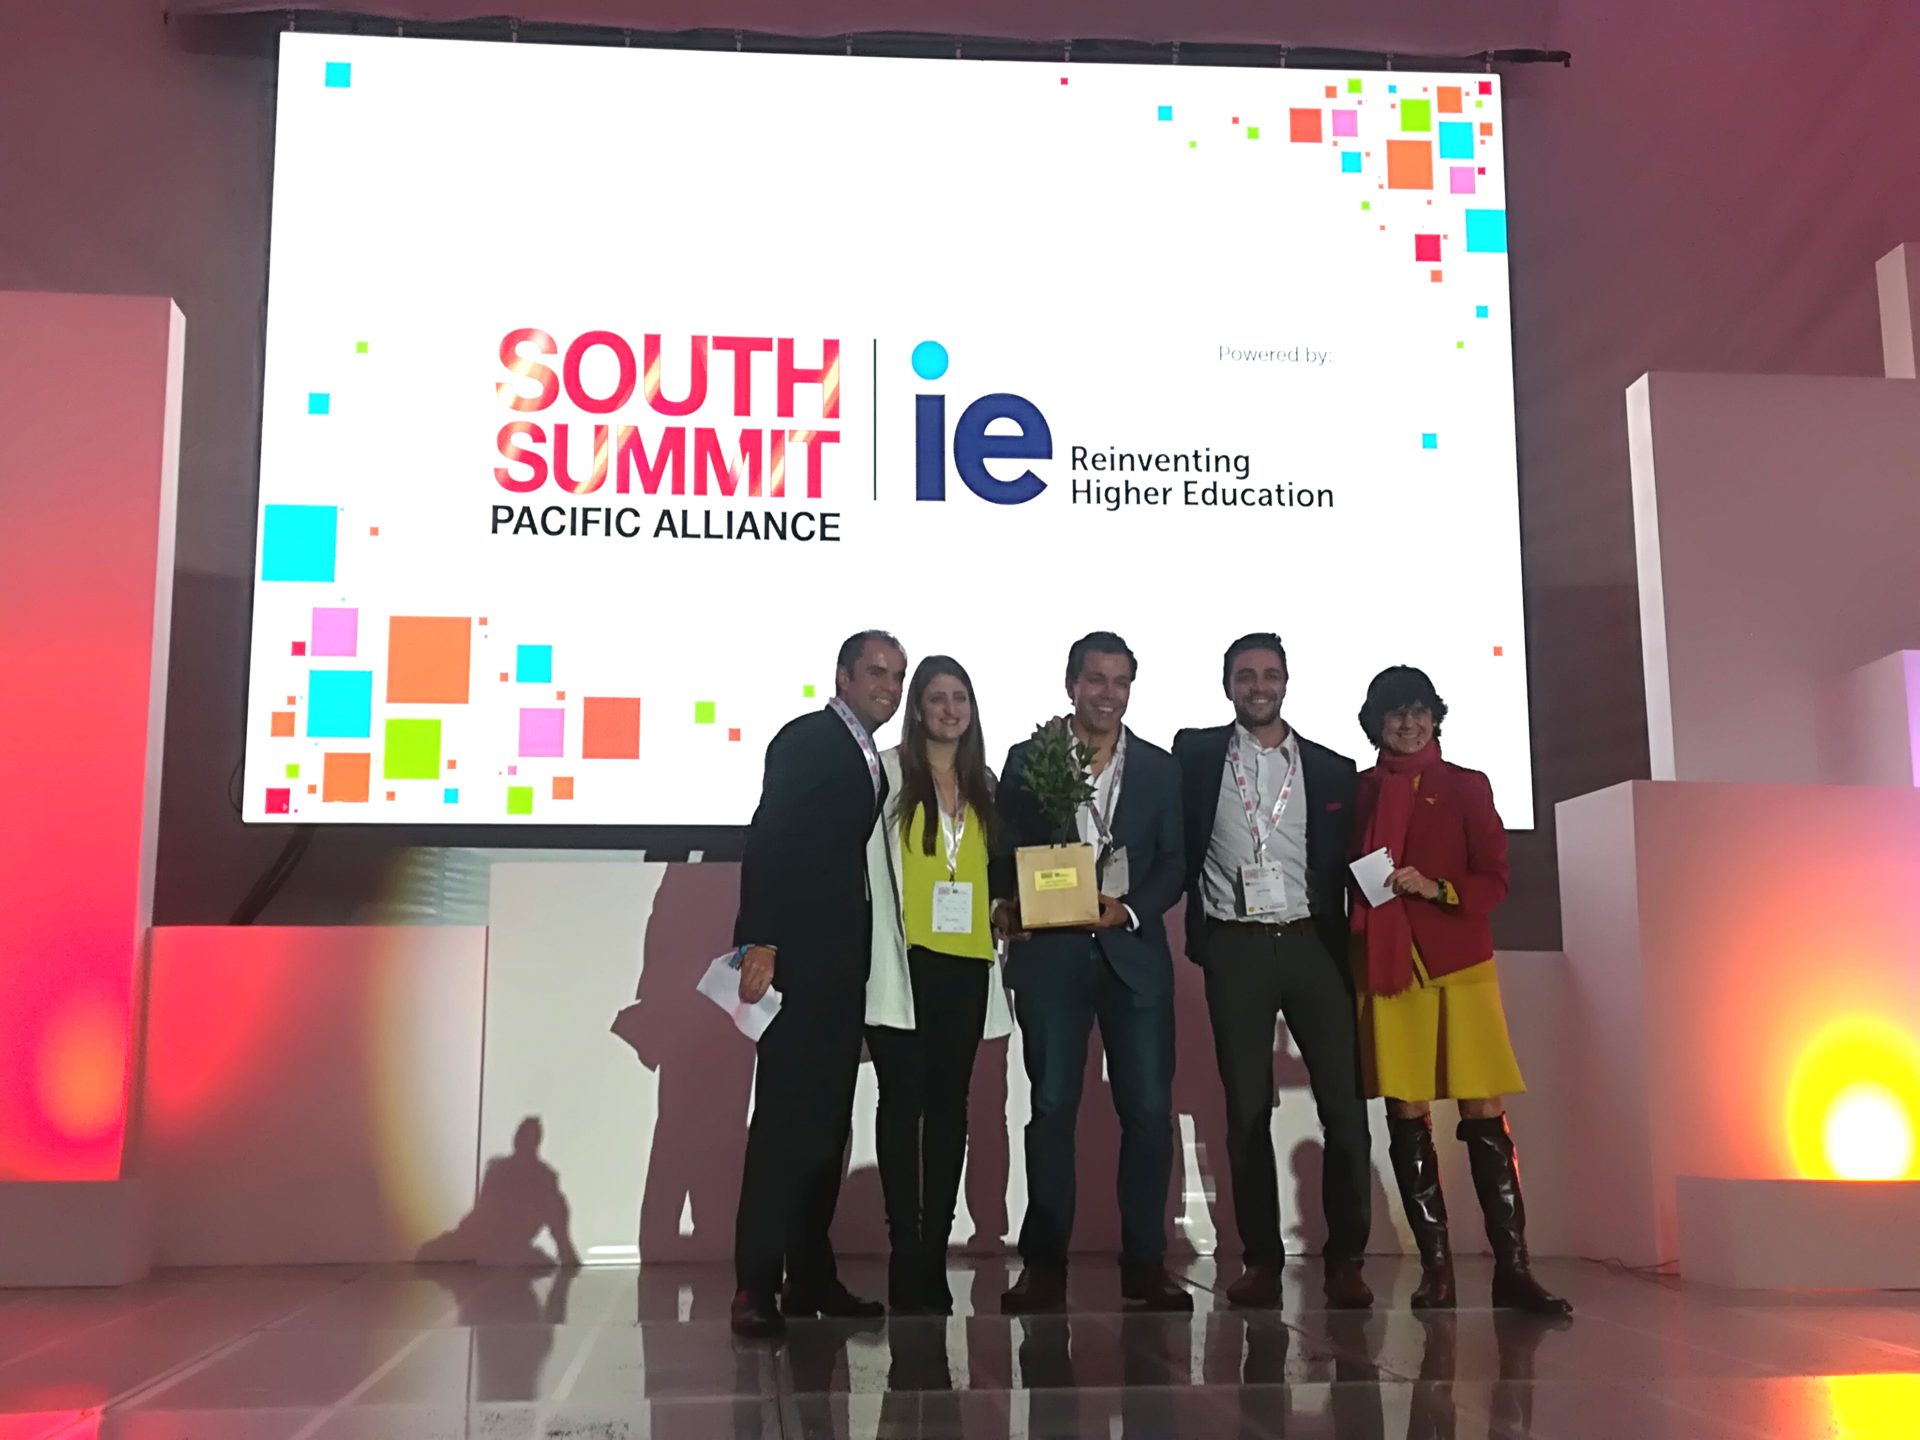 ftografía de Leal, la startups colombiana que ganó en la categoría de mejor equipo